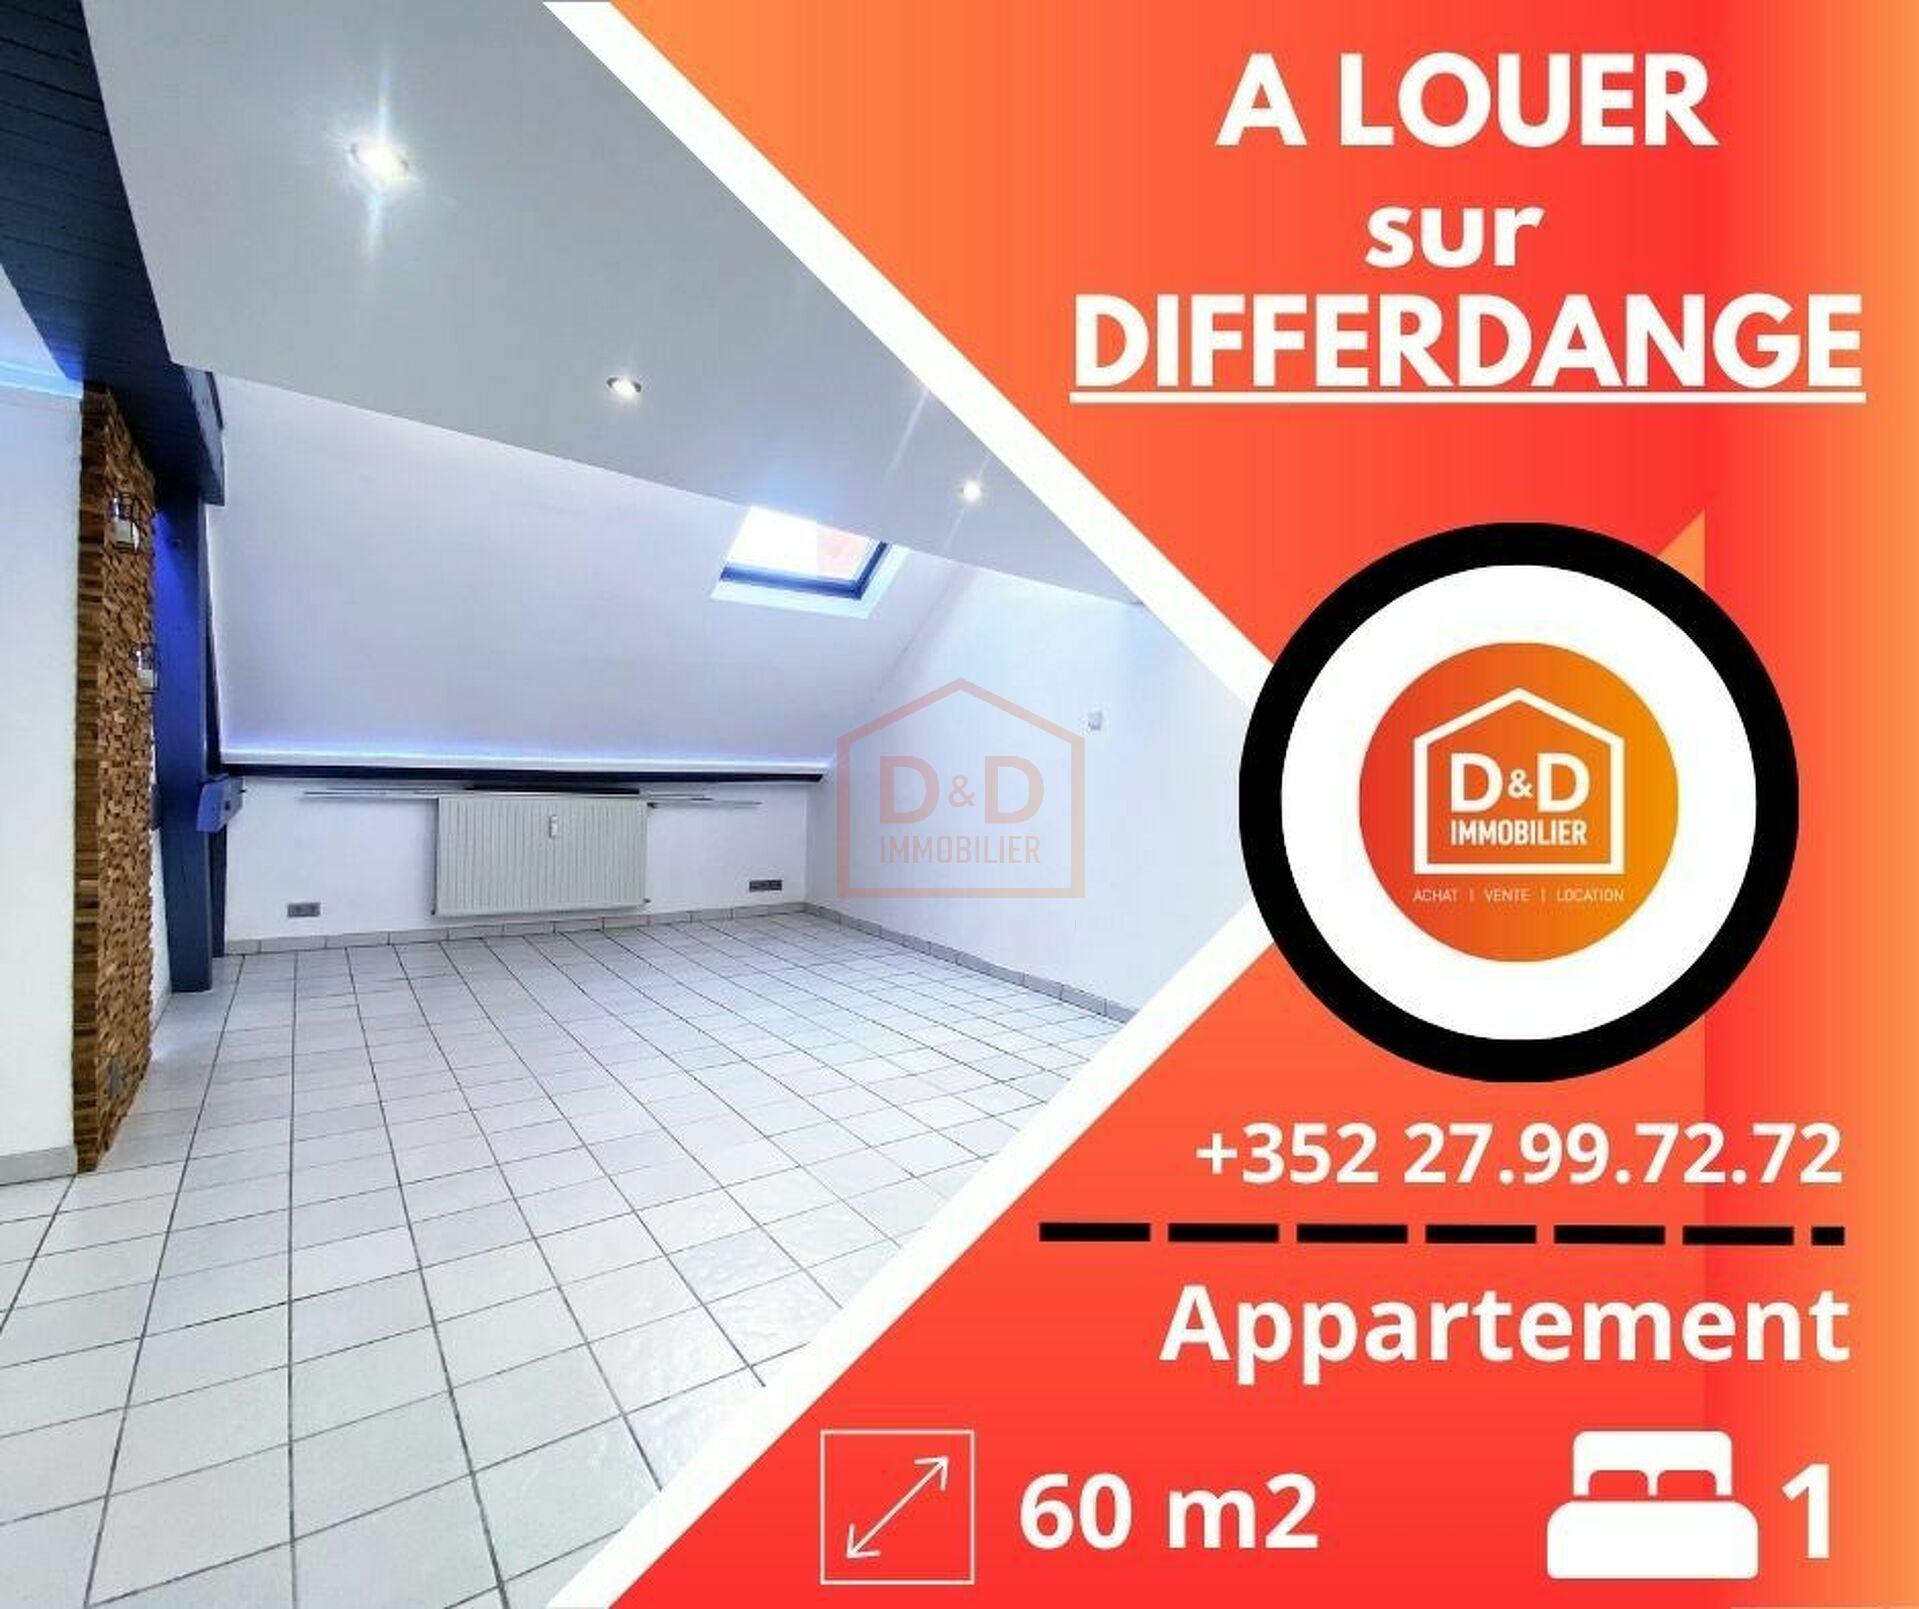 Appartement à Differdange, 60 m², 1 chambre, 1 salle de bain, 1 350 €/mois